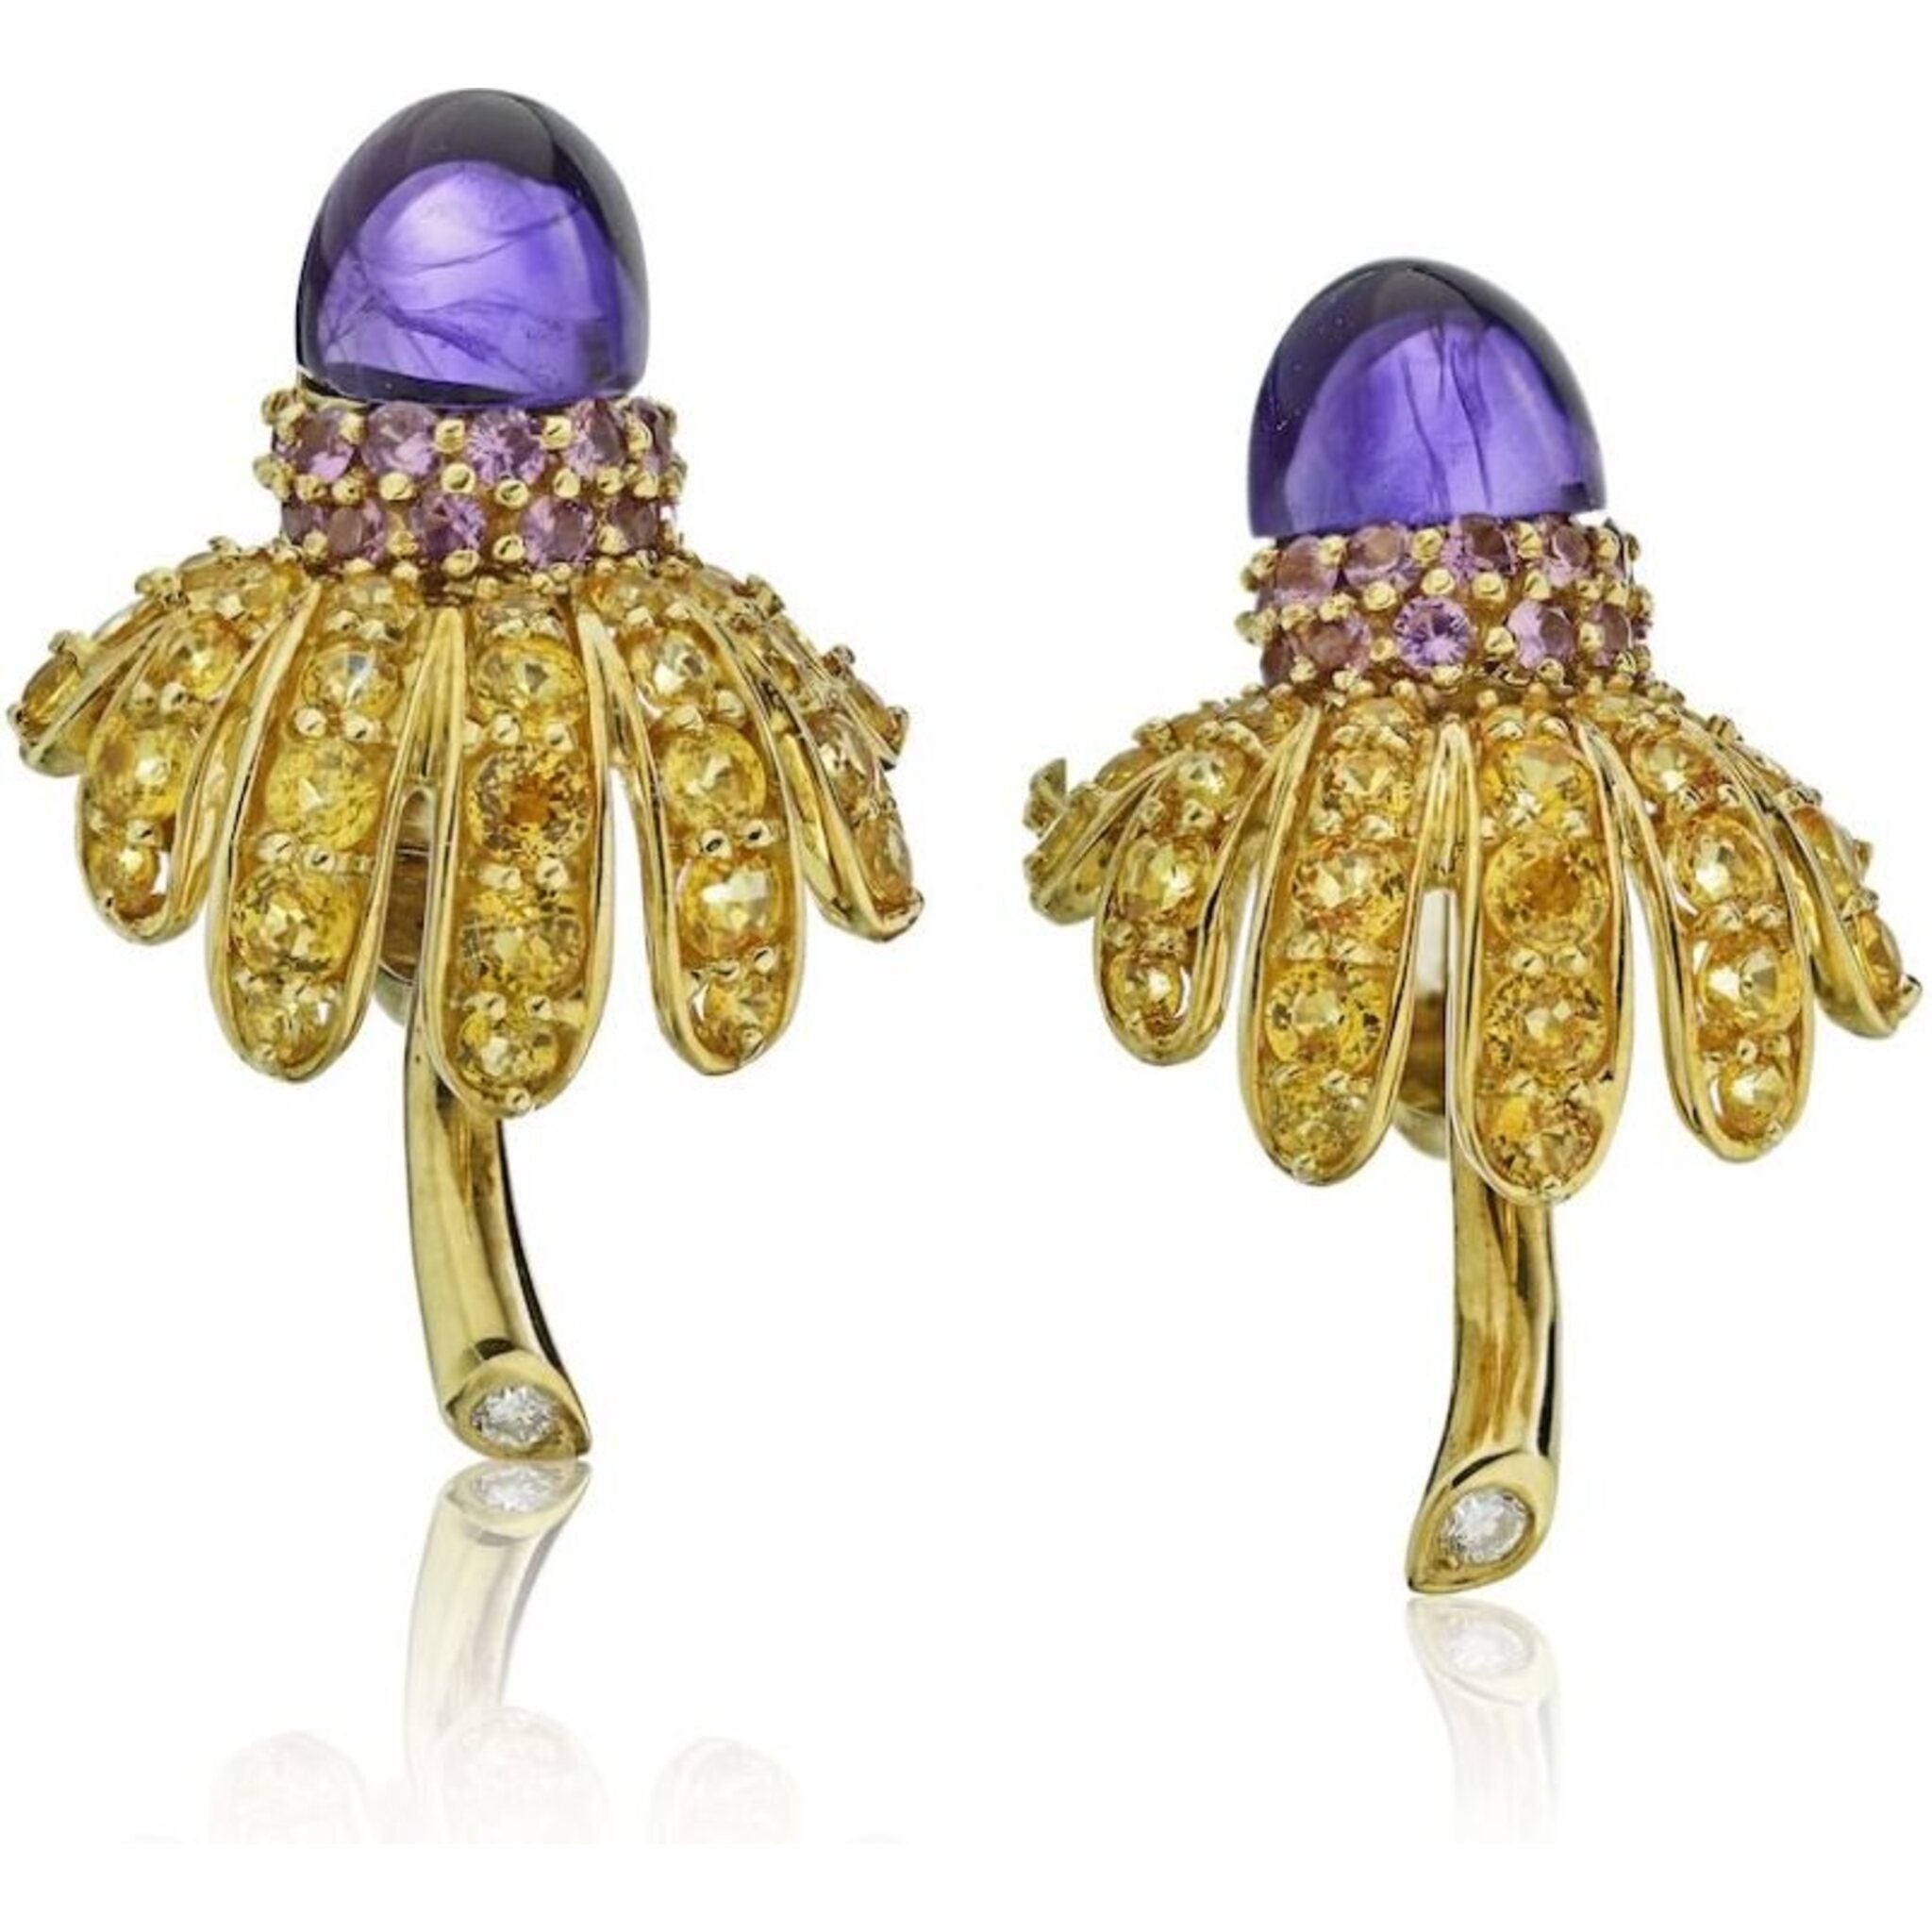 Tiffany  Co Amethyst Sparklers Earrings  Purple Sterling Silver Stud  Earrings  TIF35152  The RealReal